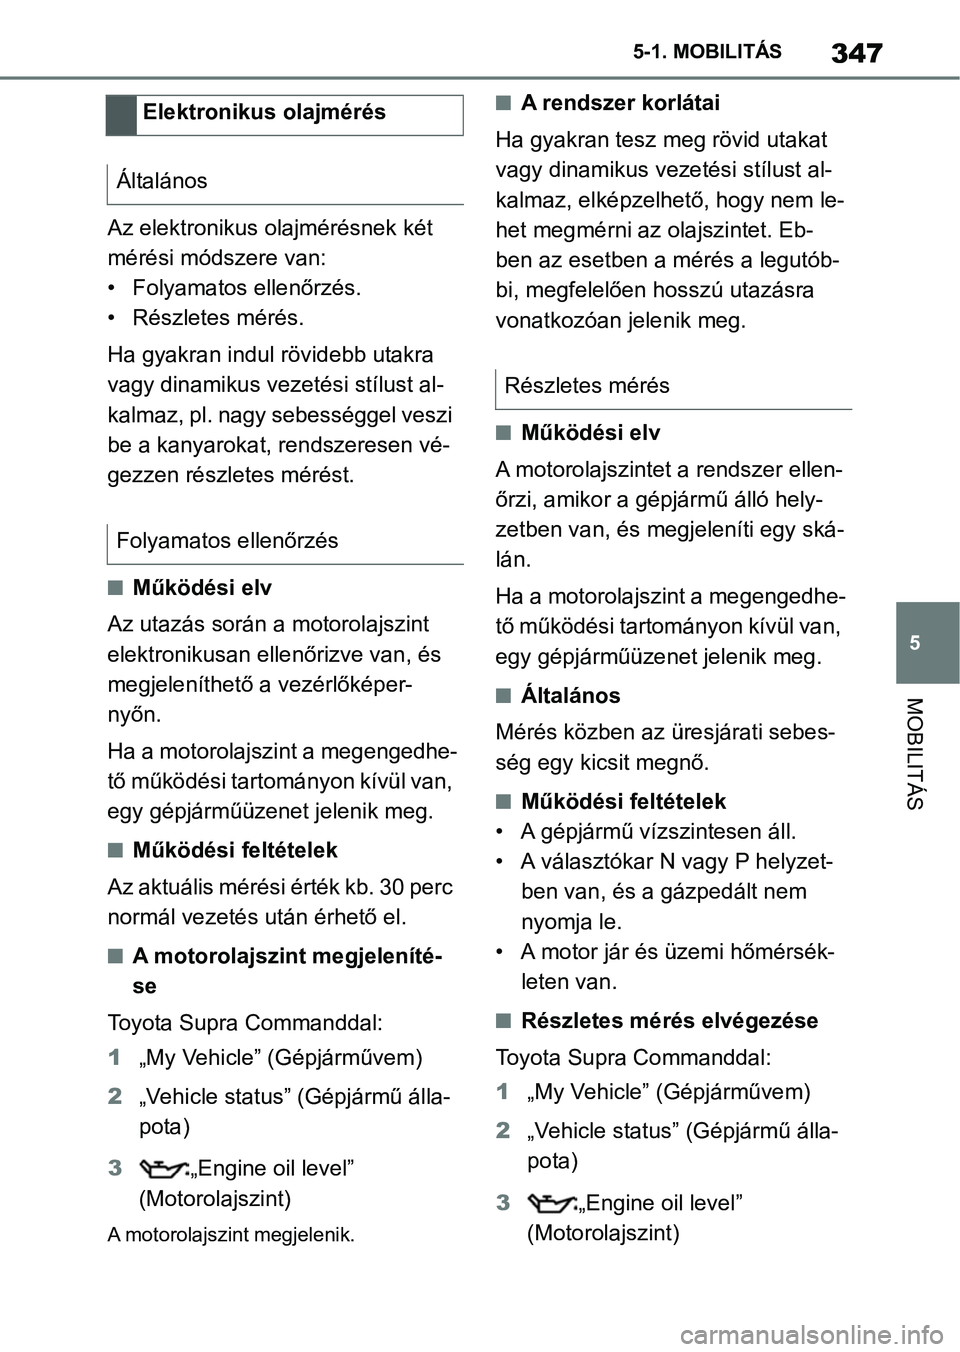 TOYOTA SUPRA 2020  Kezelési útmutató (in Hungarian) 347
5
5-1. MOBILITÁS
MOBILITÁS
Az elektronikus olajmérésnek két 
mérési módszere van:
• Folyamatos ellenőrzés.
• Részletes mérés.
Ha gyakran indul rövidebb utakra 
vagy dinamikus vez